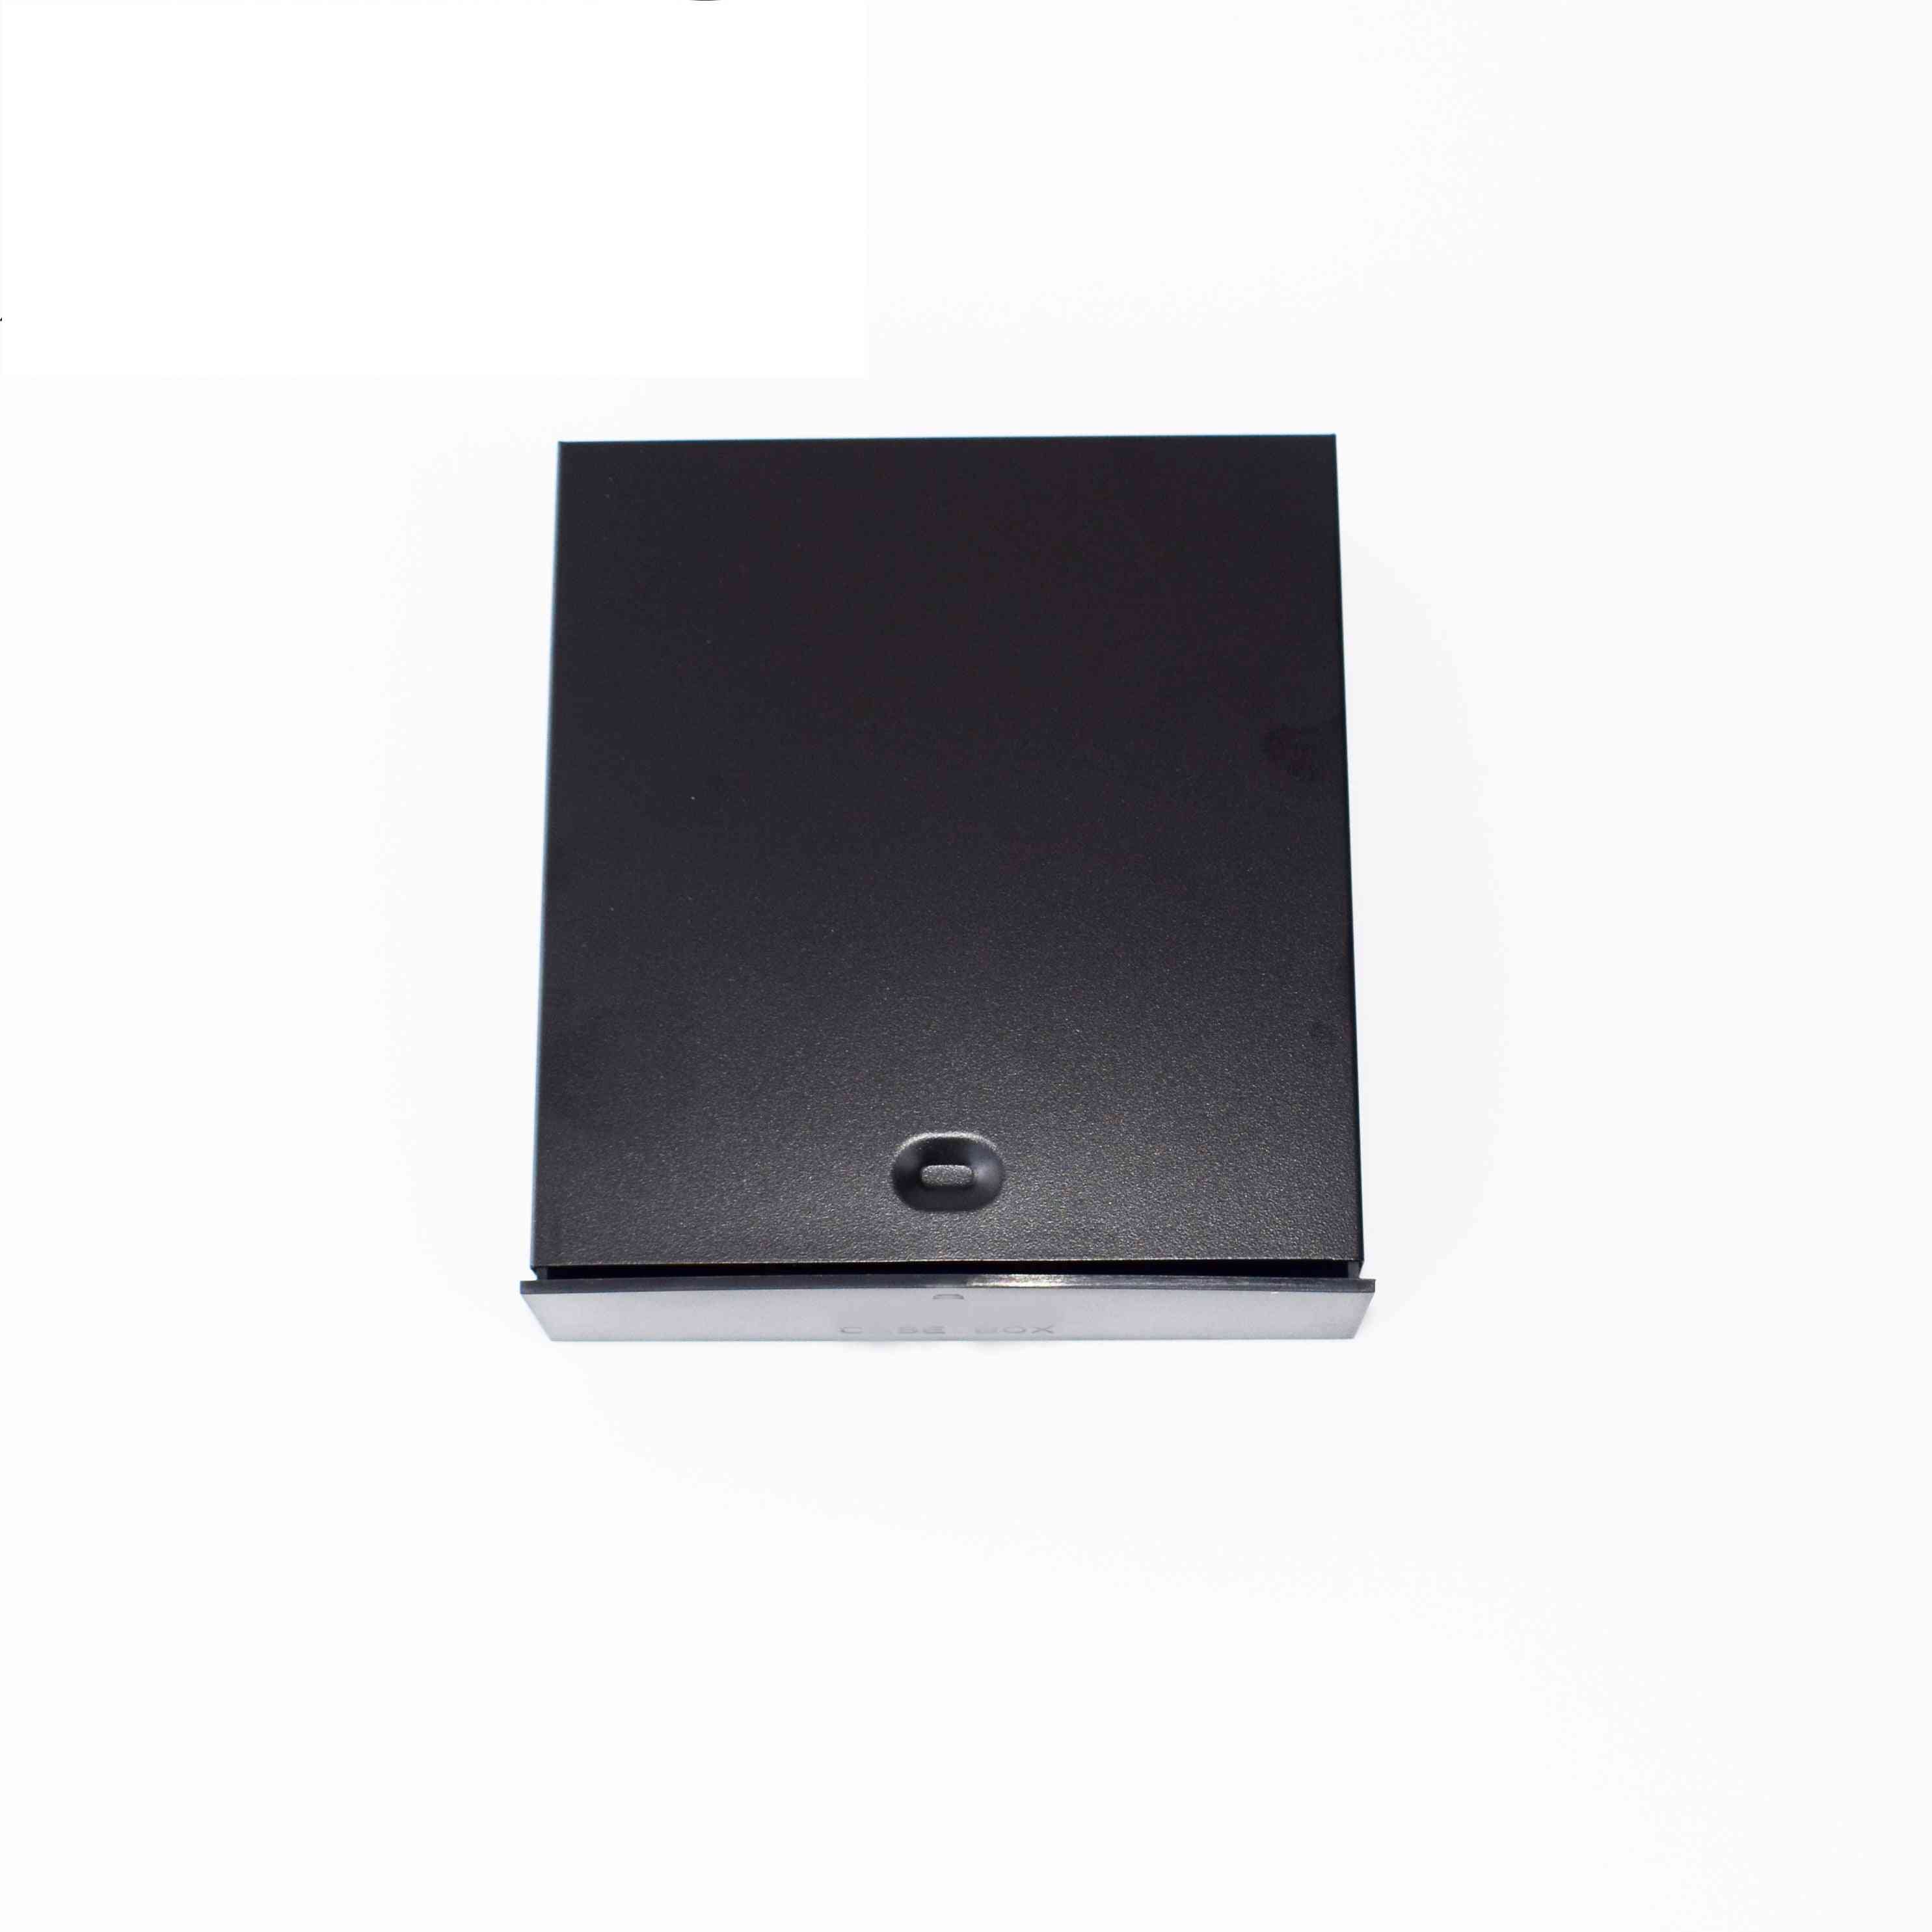 Negro computadora de escritorio-atx / matx disco duro móvil-en blanco-rack cajón bandeja caja de almacenamiento / caja (5.25 